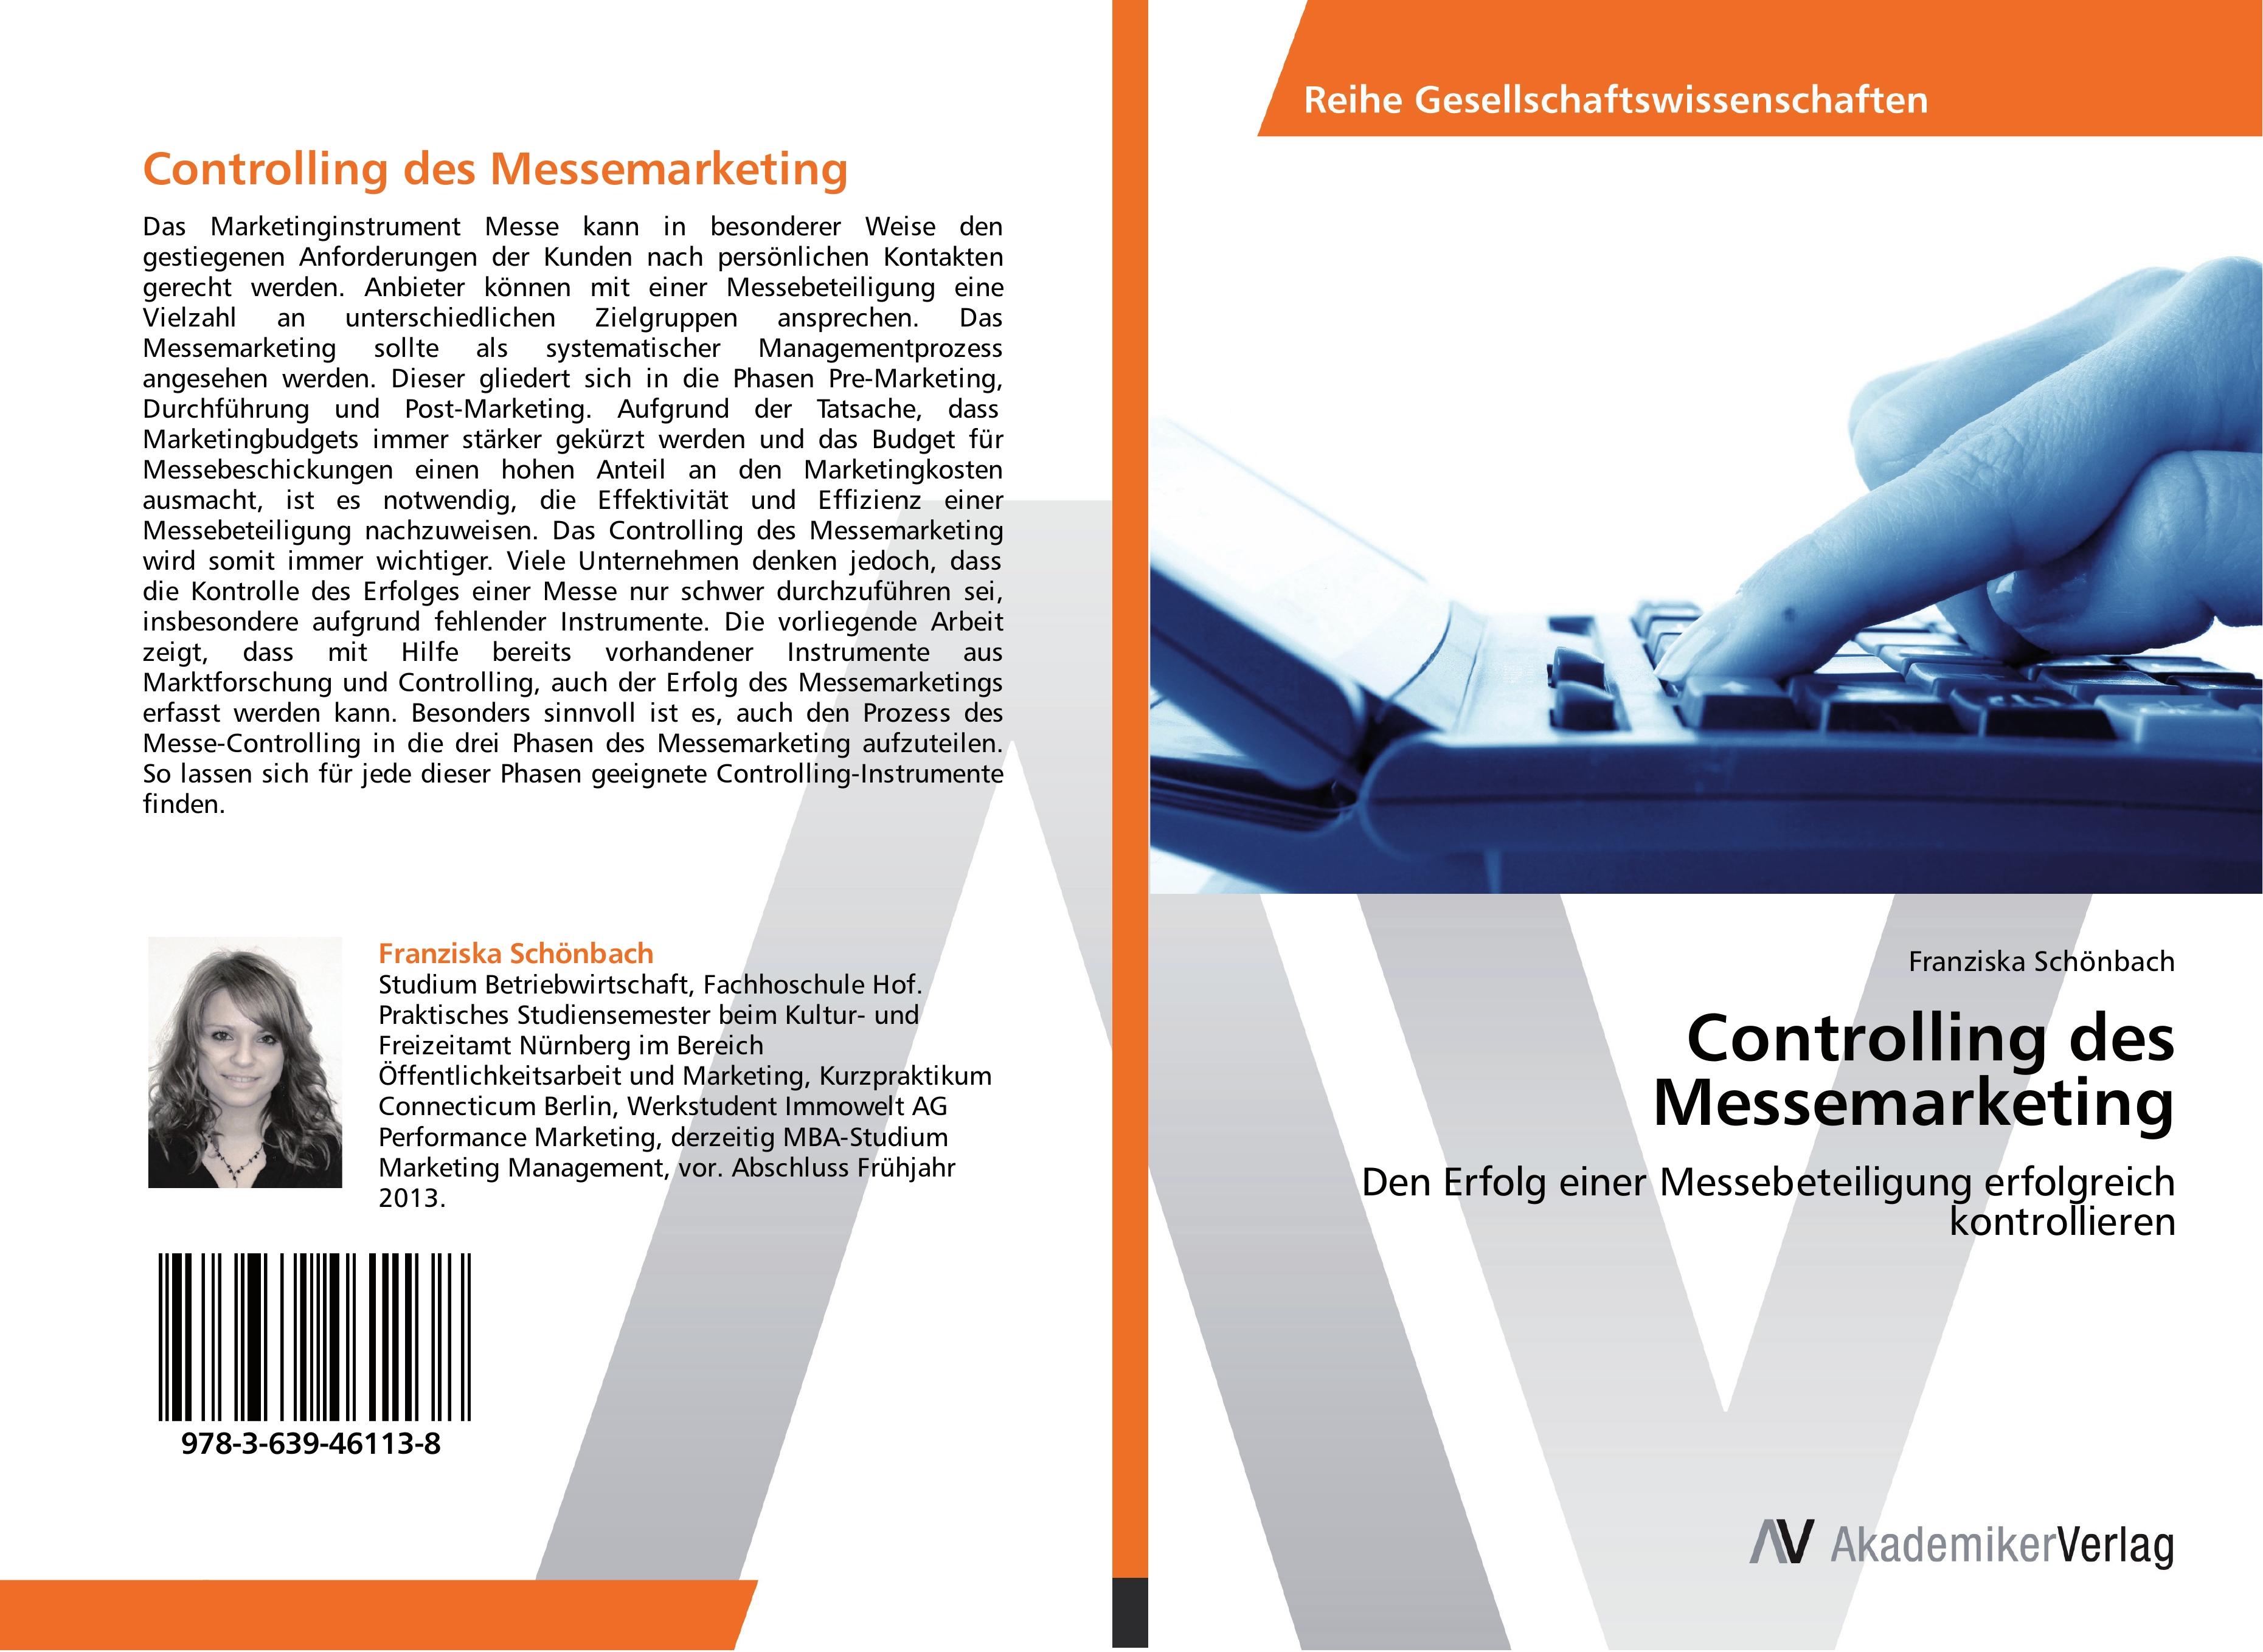 Controlling des Messemarketing - Franziska Schoenbach